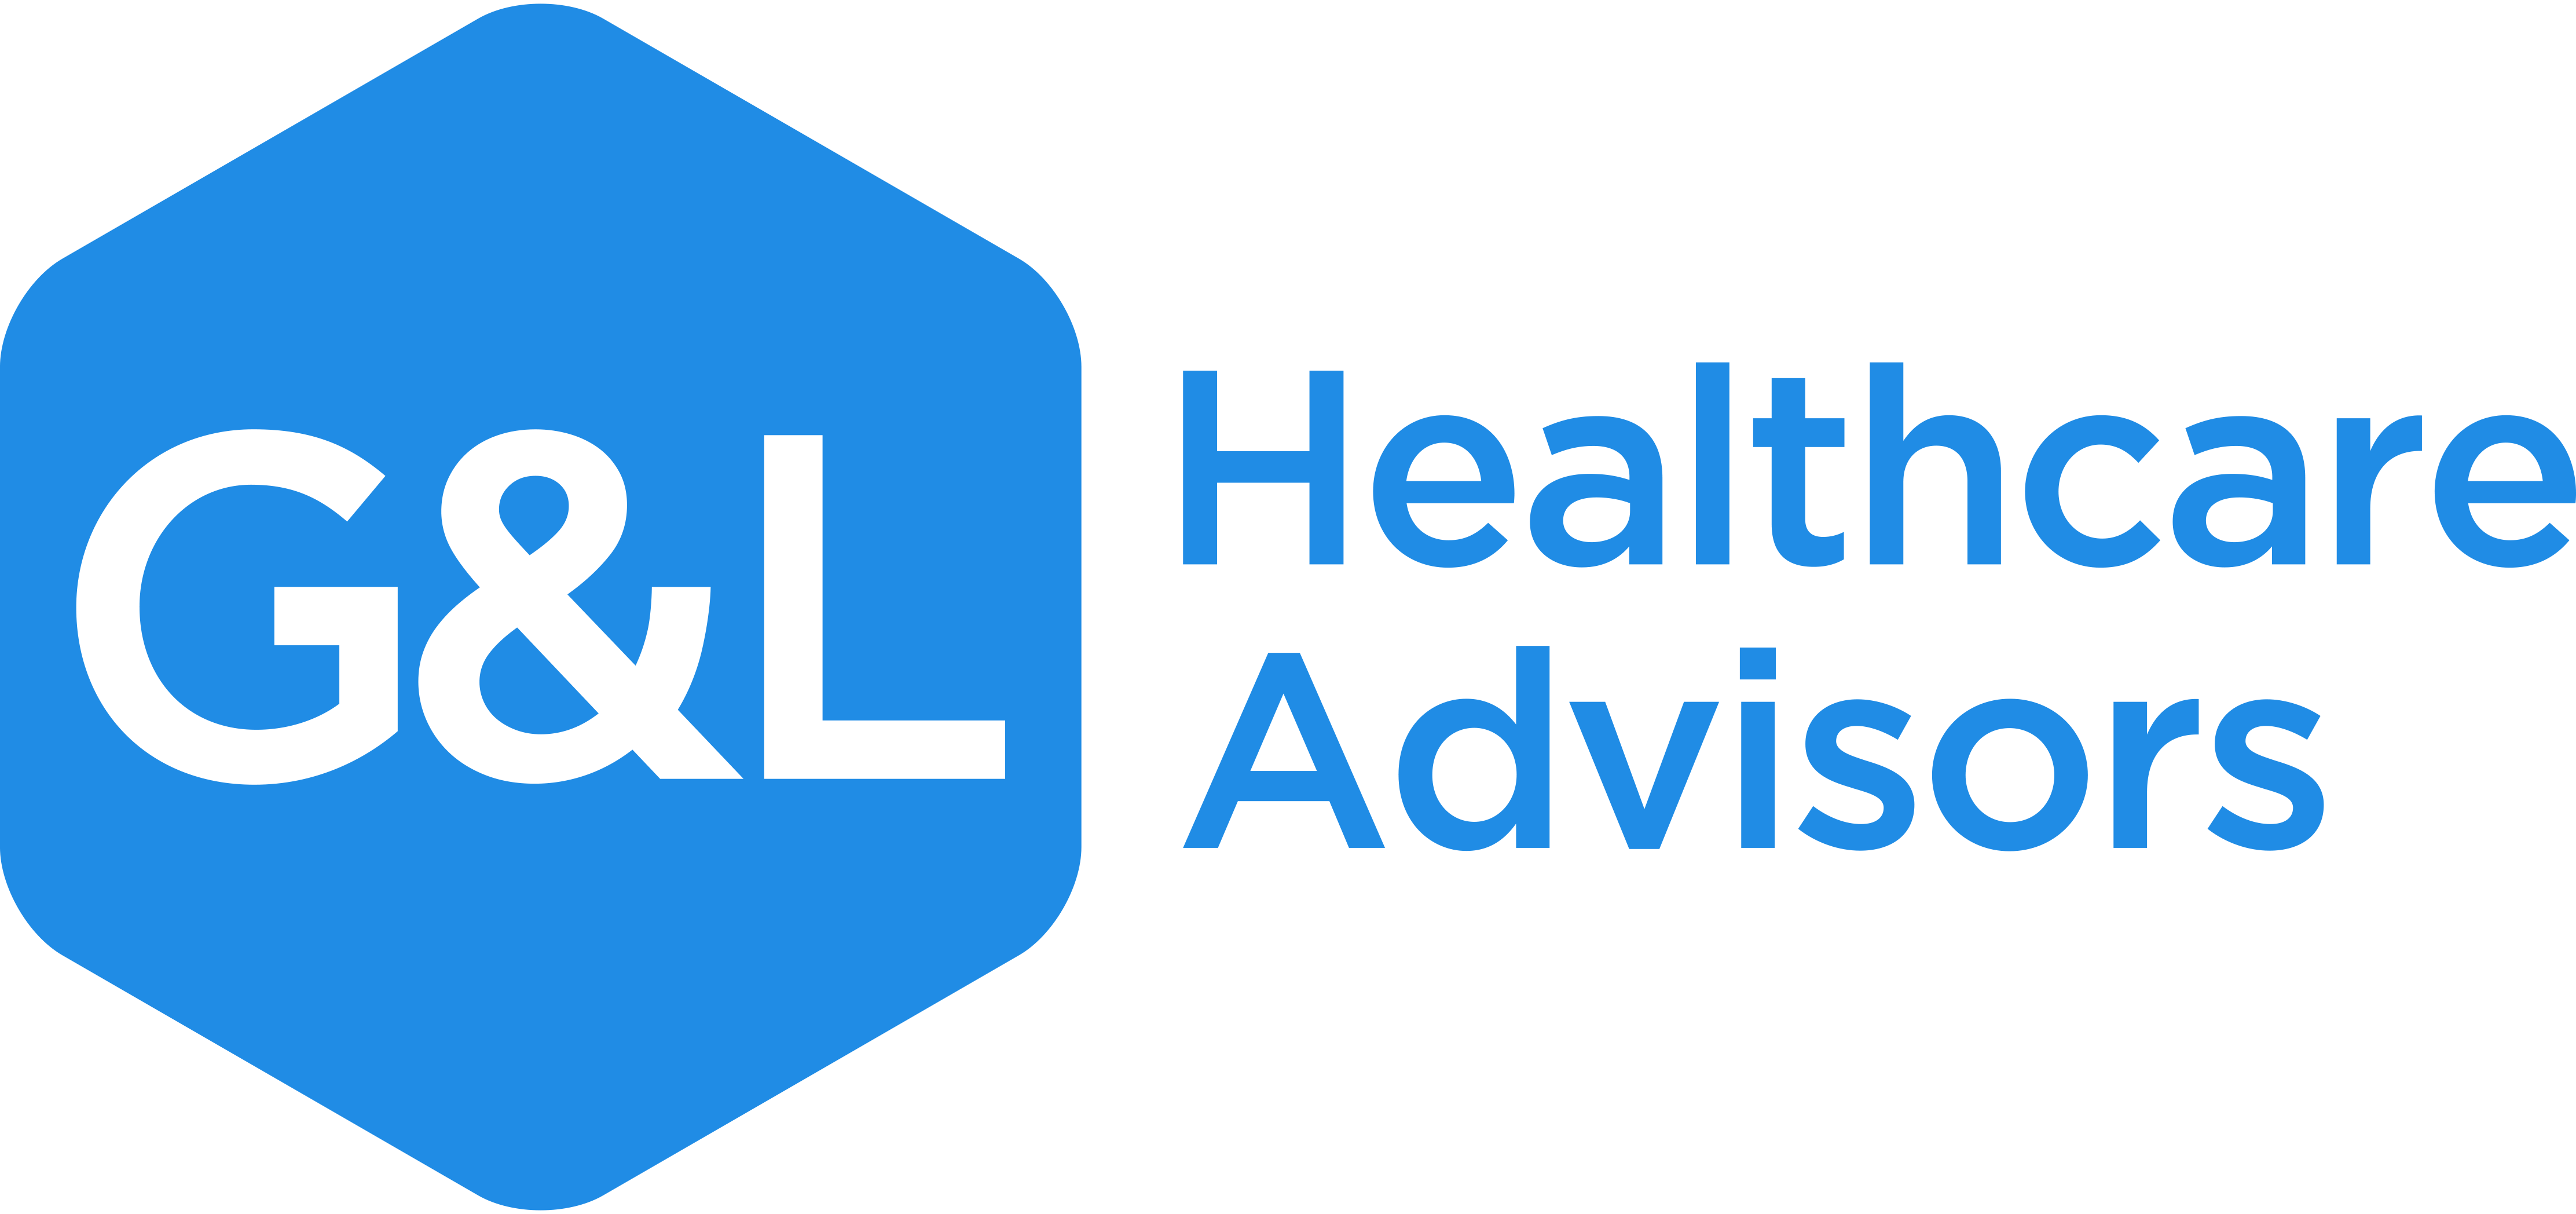 G&l Healthcare Advisors